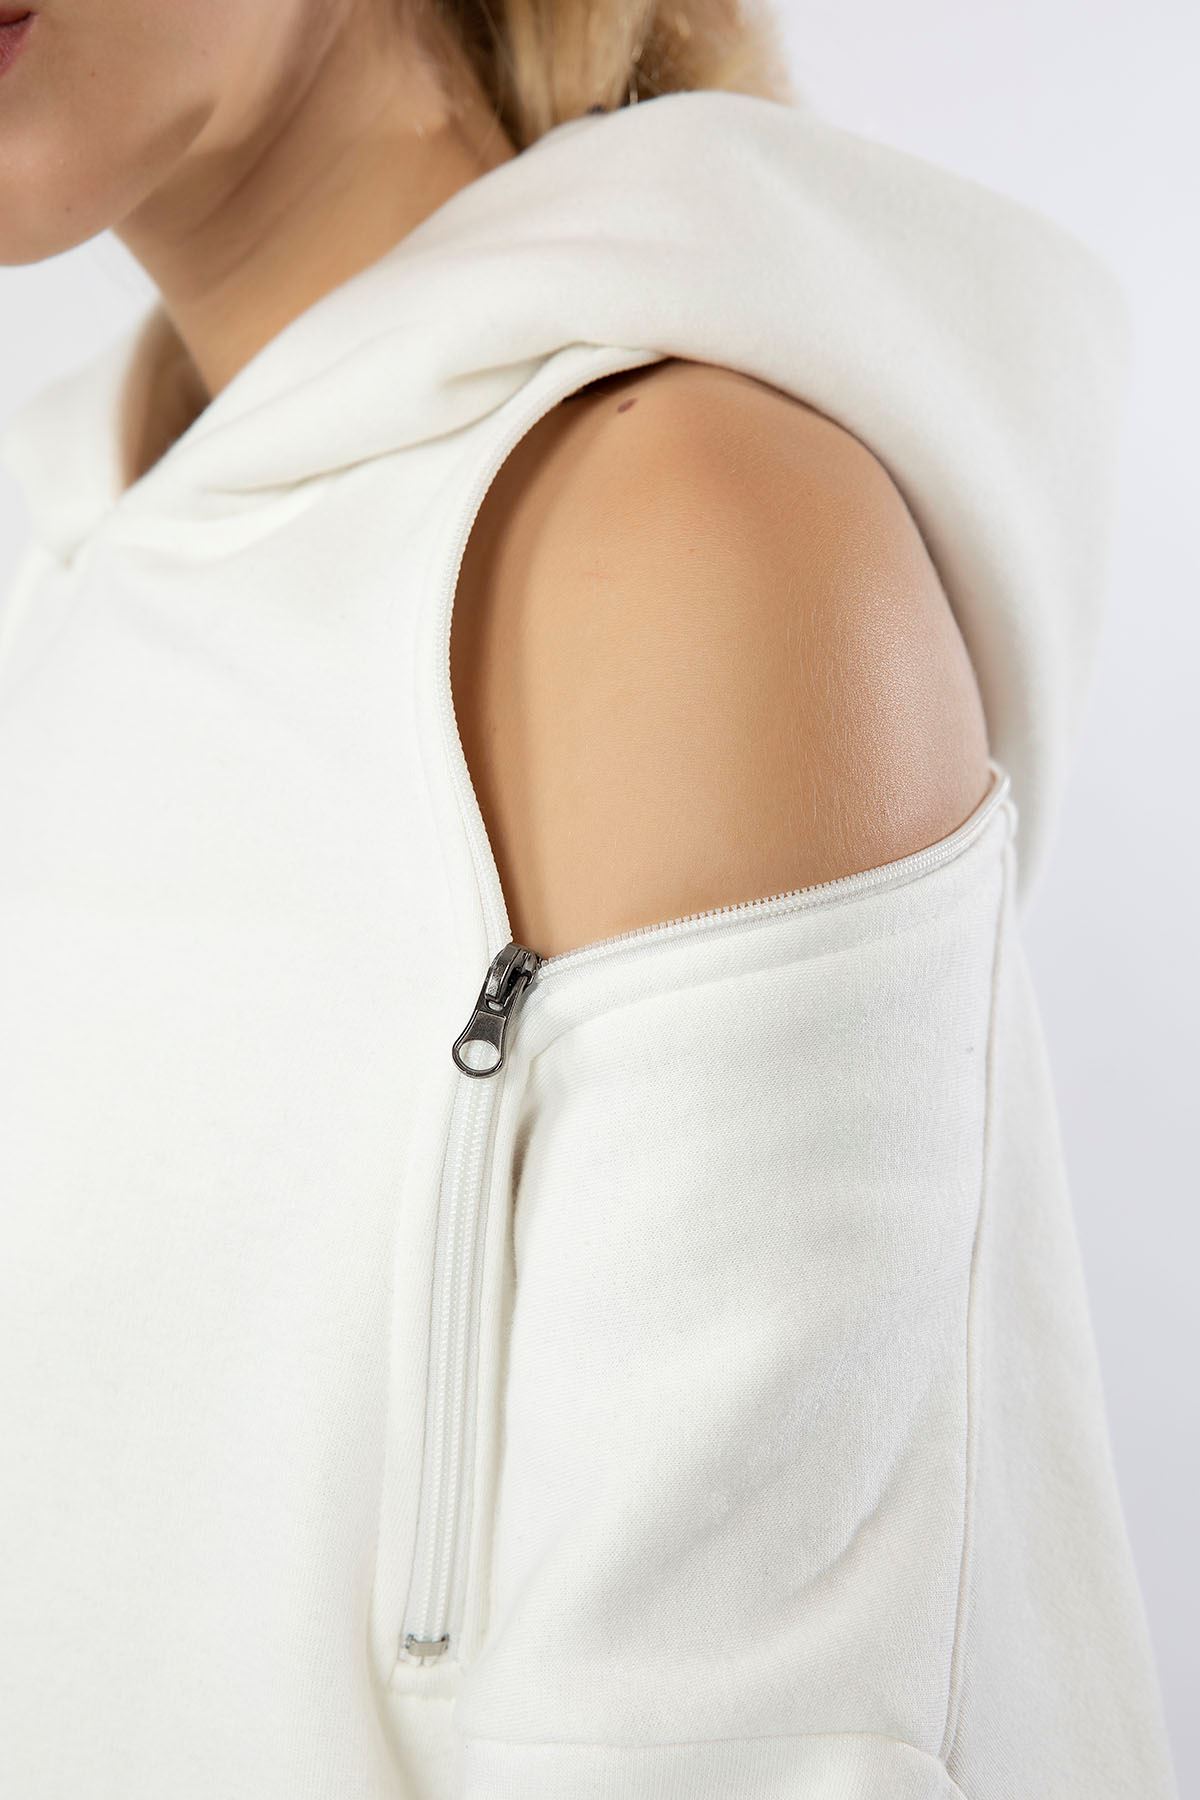 Third Knit Fabric Hooded Below The Hip Oversize Button Women Sweatshirt - Ecru